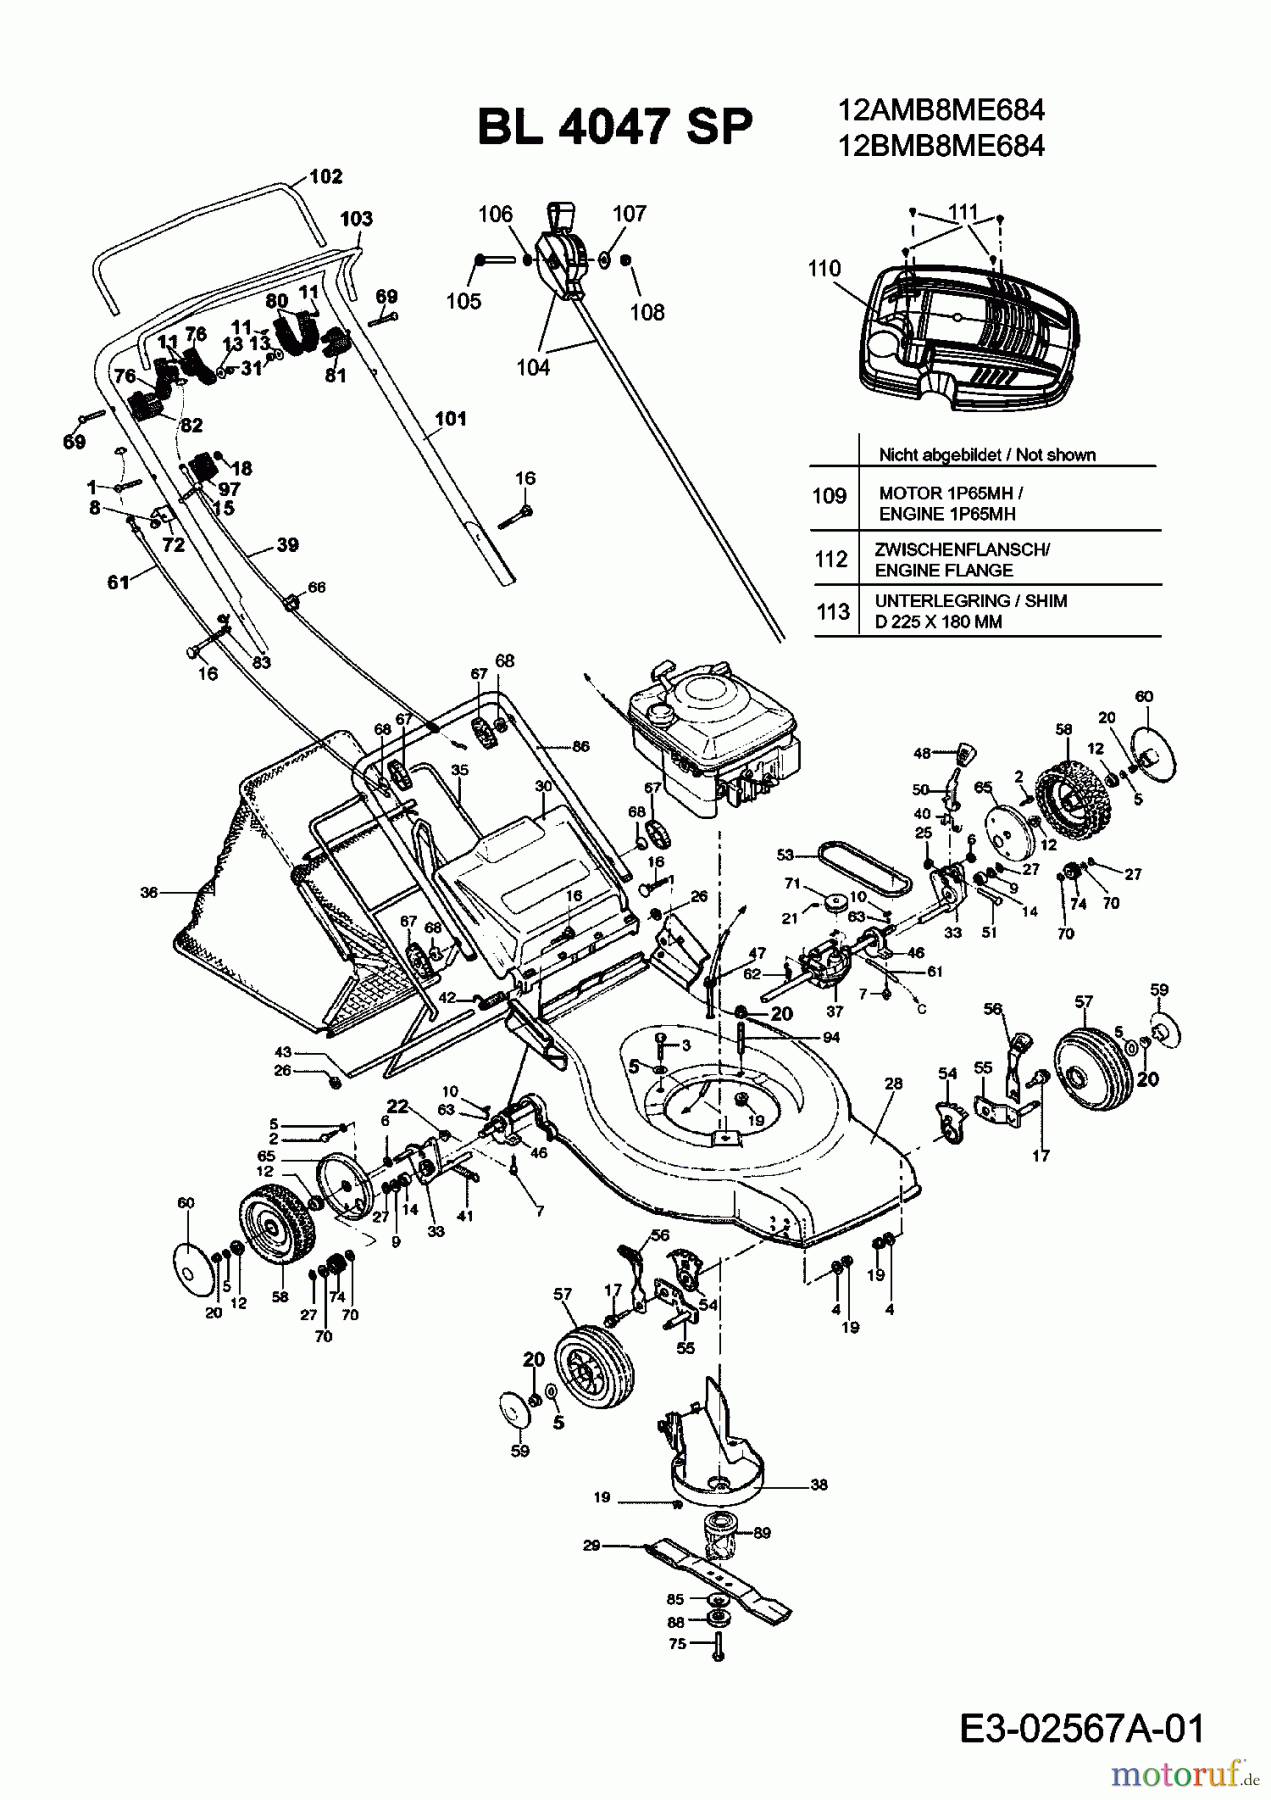  Bolens Motormäher mit Antrieb BL 4047 SP 12BMB8ME684  (2008) Grundgerät